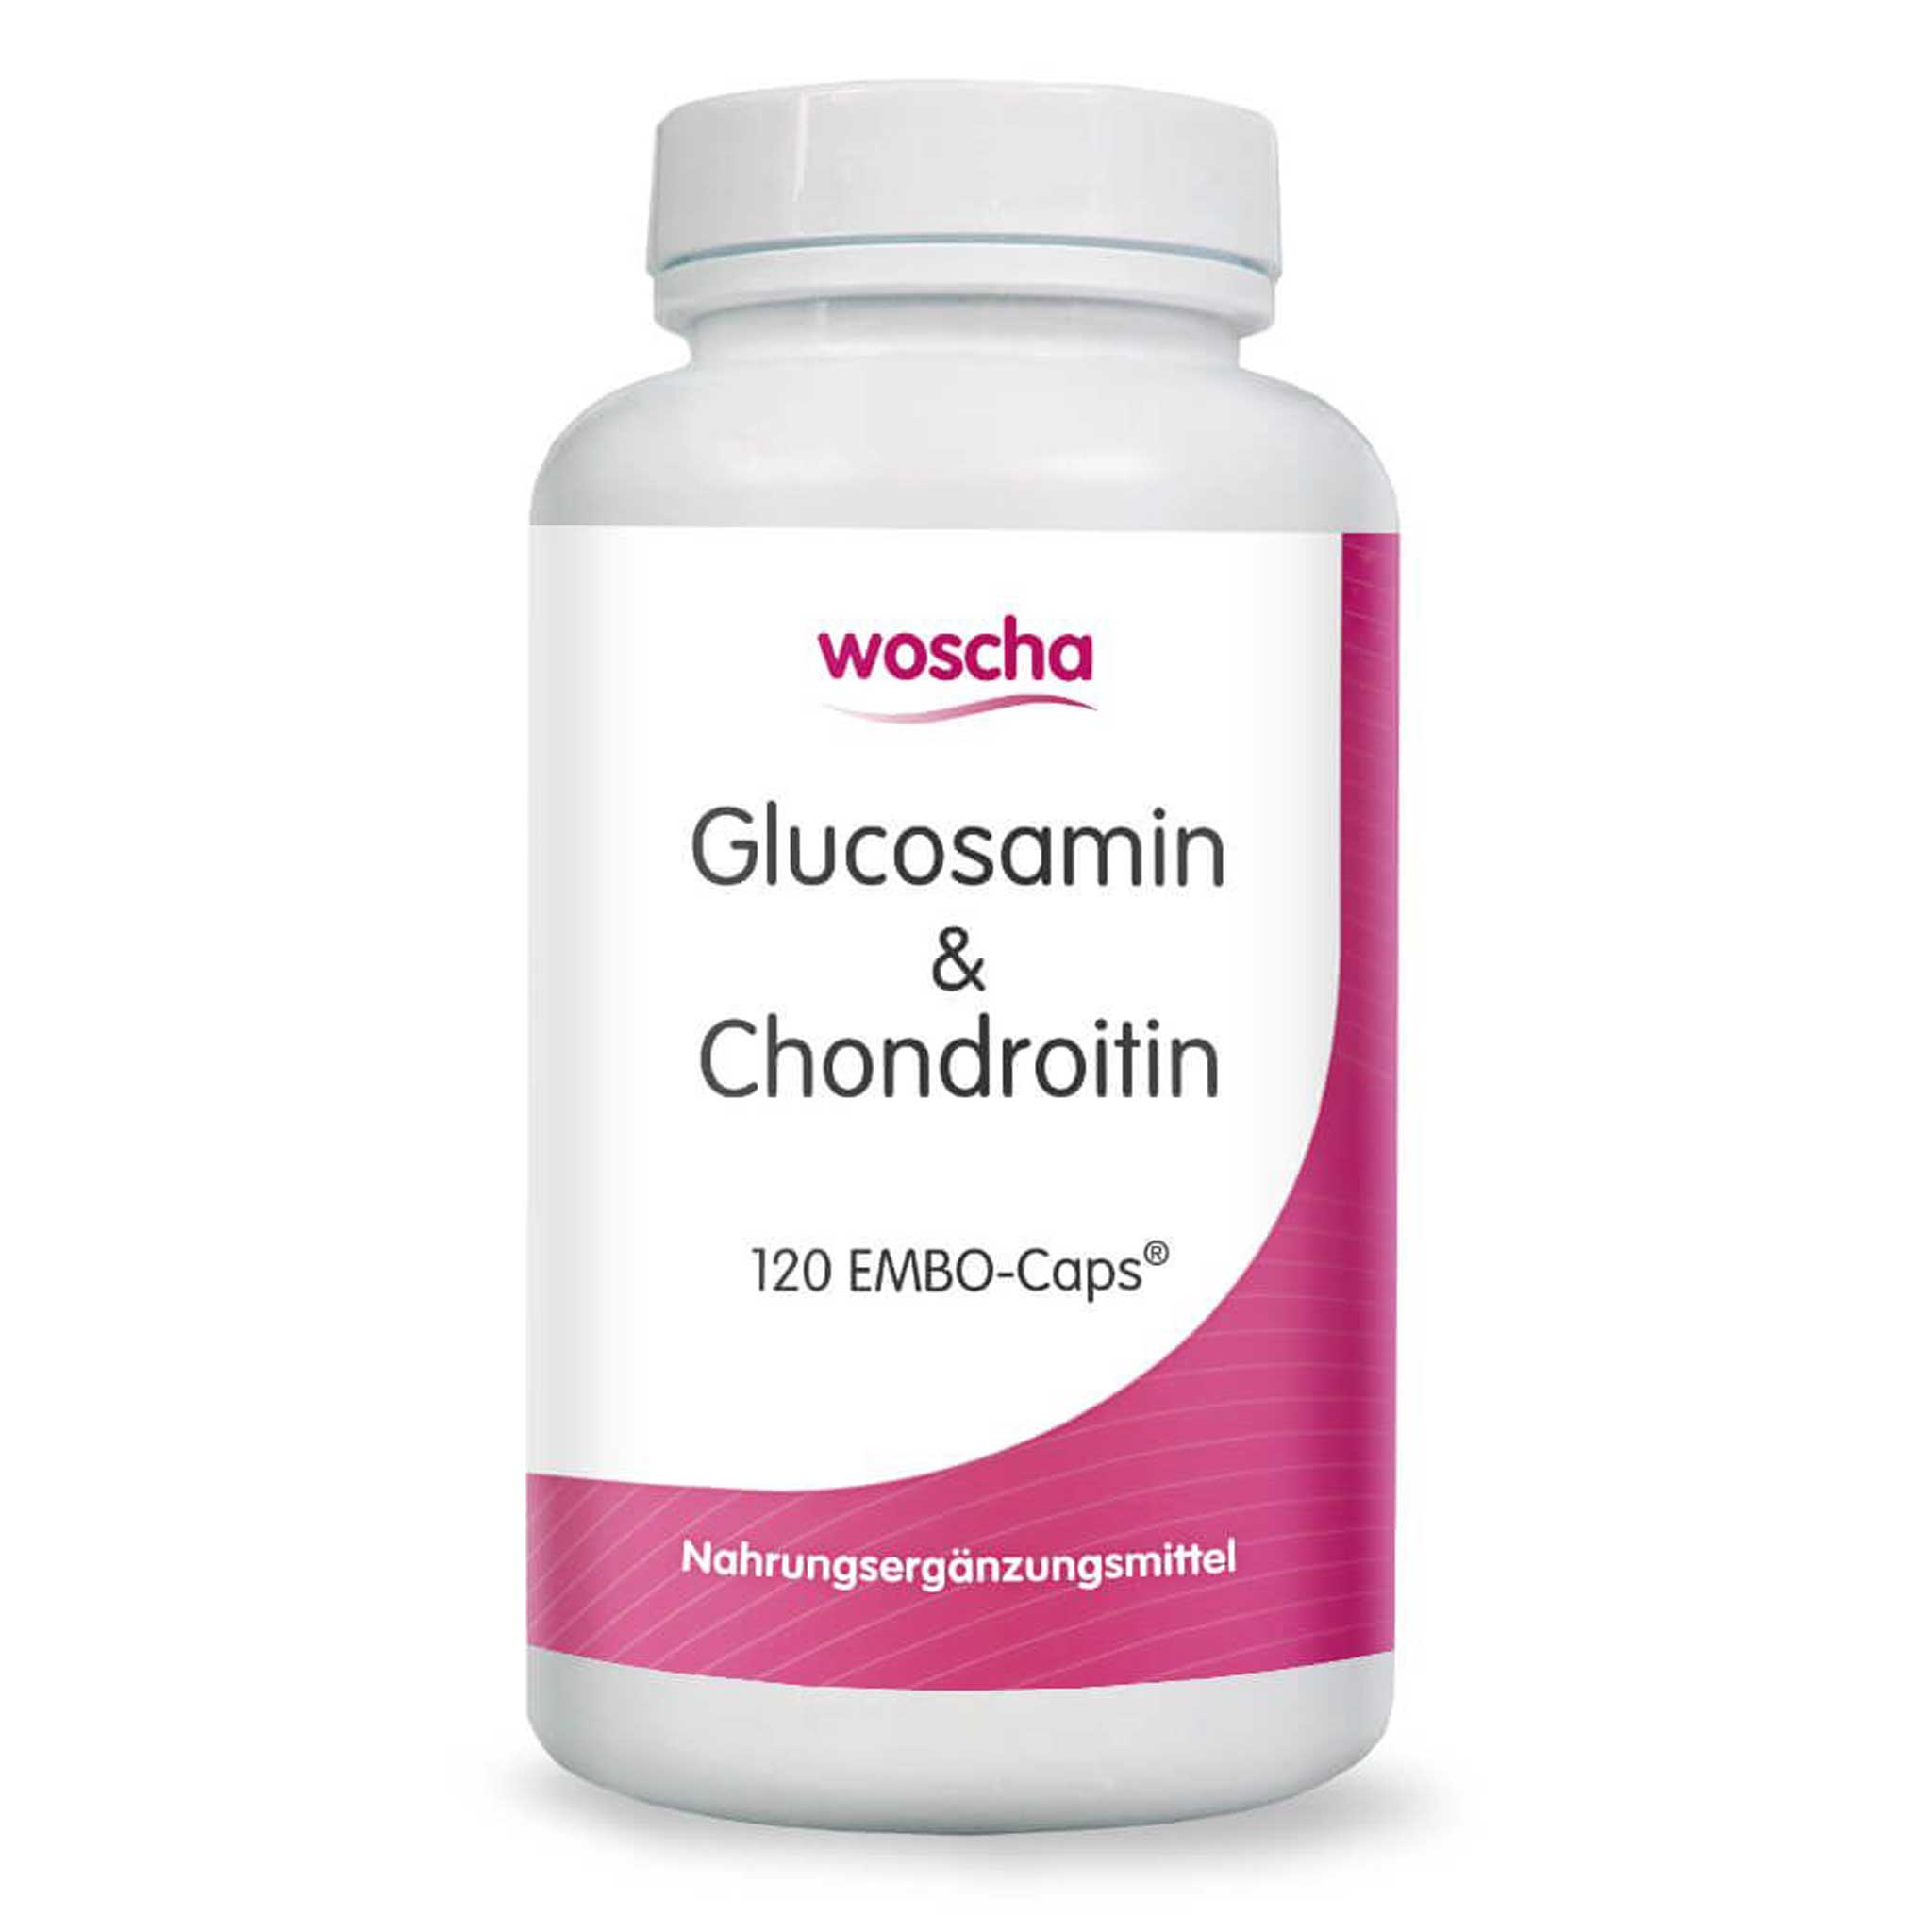 Woscha Glucosamin & Chondroitin von podo medi beinhaltet 120 Kapseln